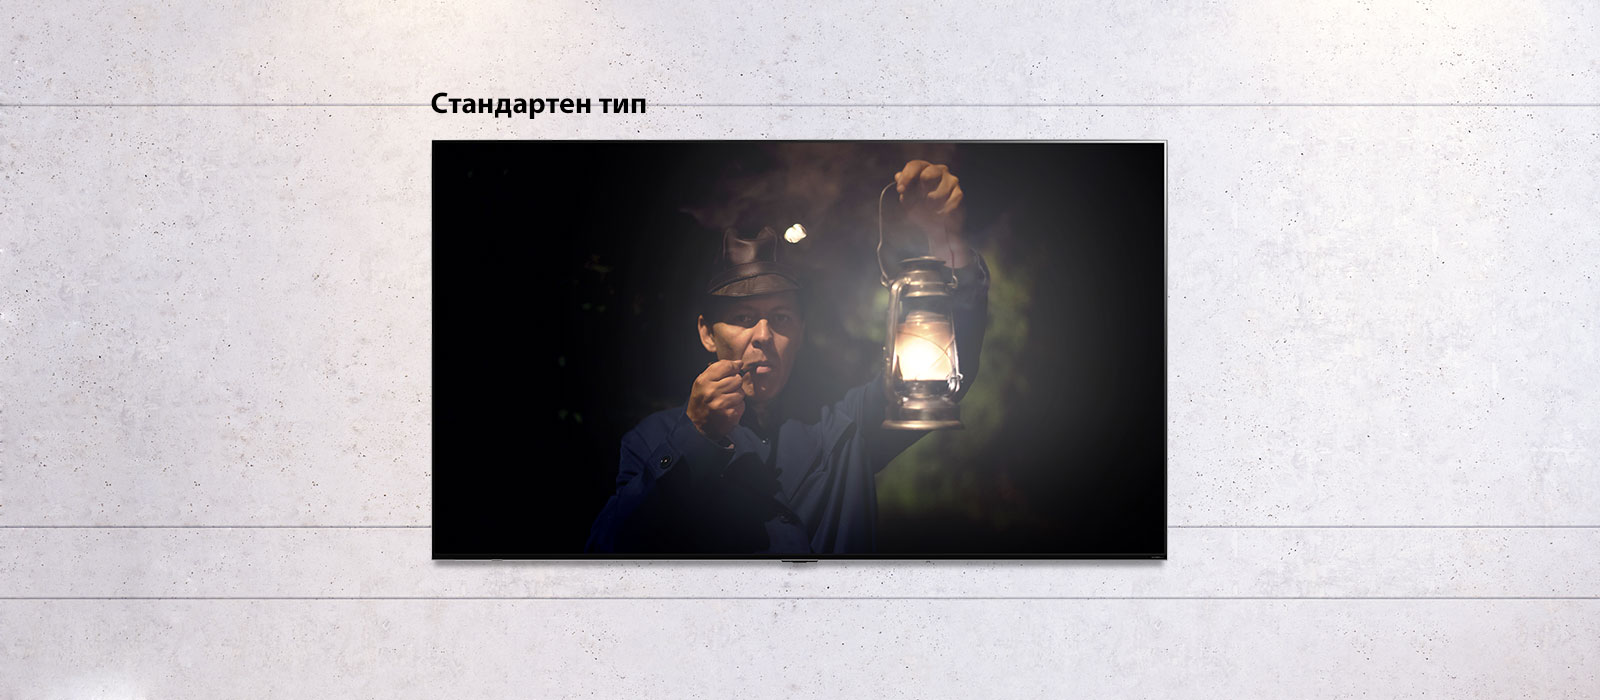 Изображение с възможност за превъртане на монтиран на стена телевизор, на който се вижда тъмна сцена с мъж, който държи лампа. Показването на сцената се редува на телевизор с обикновен екран и телевизор LG QNED MiniLED TV.